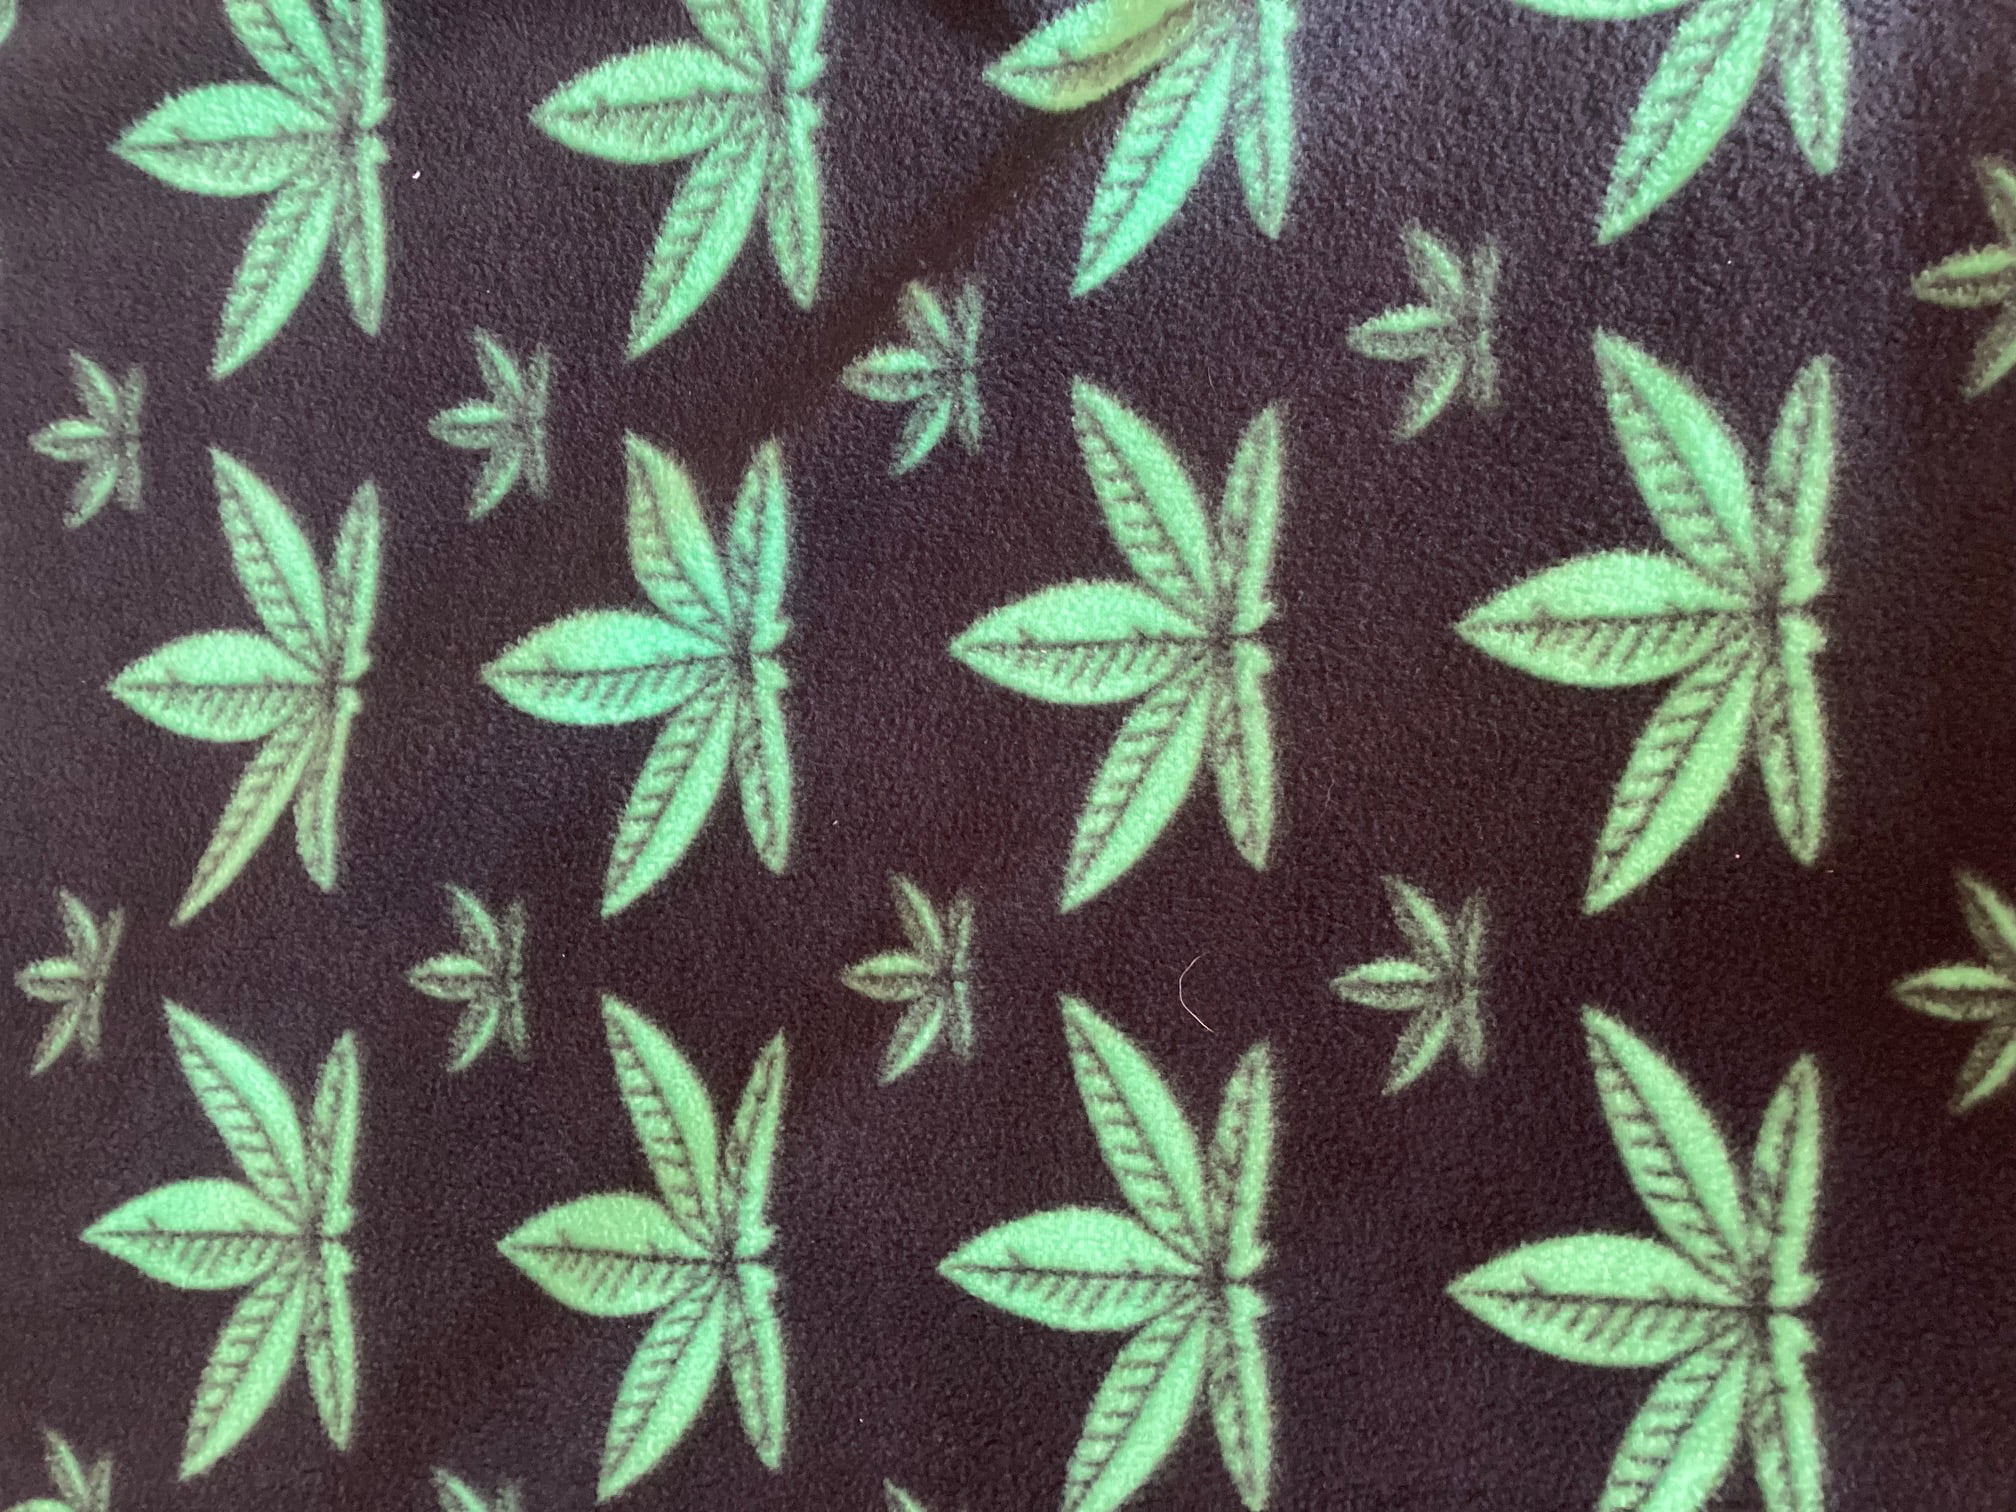 Marijuana Sweet Leaf Hemp Bright Colors Fabric Printed by Spoonflower BTY 